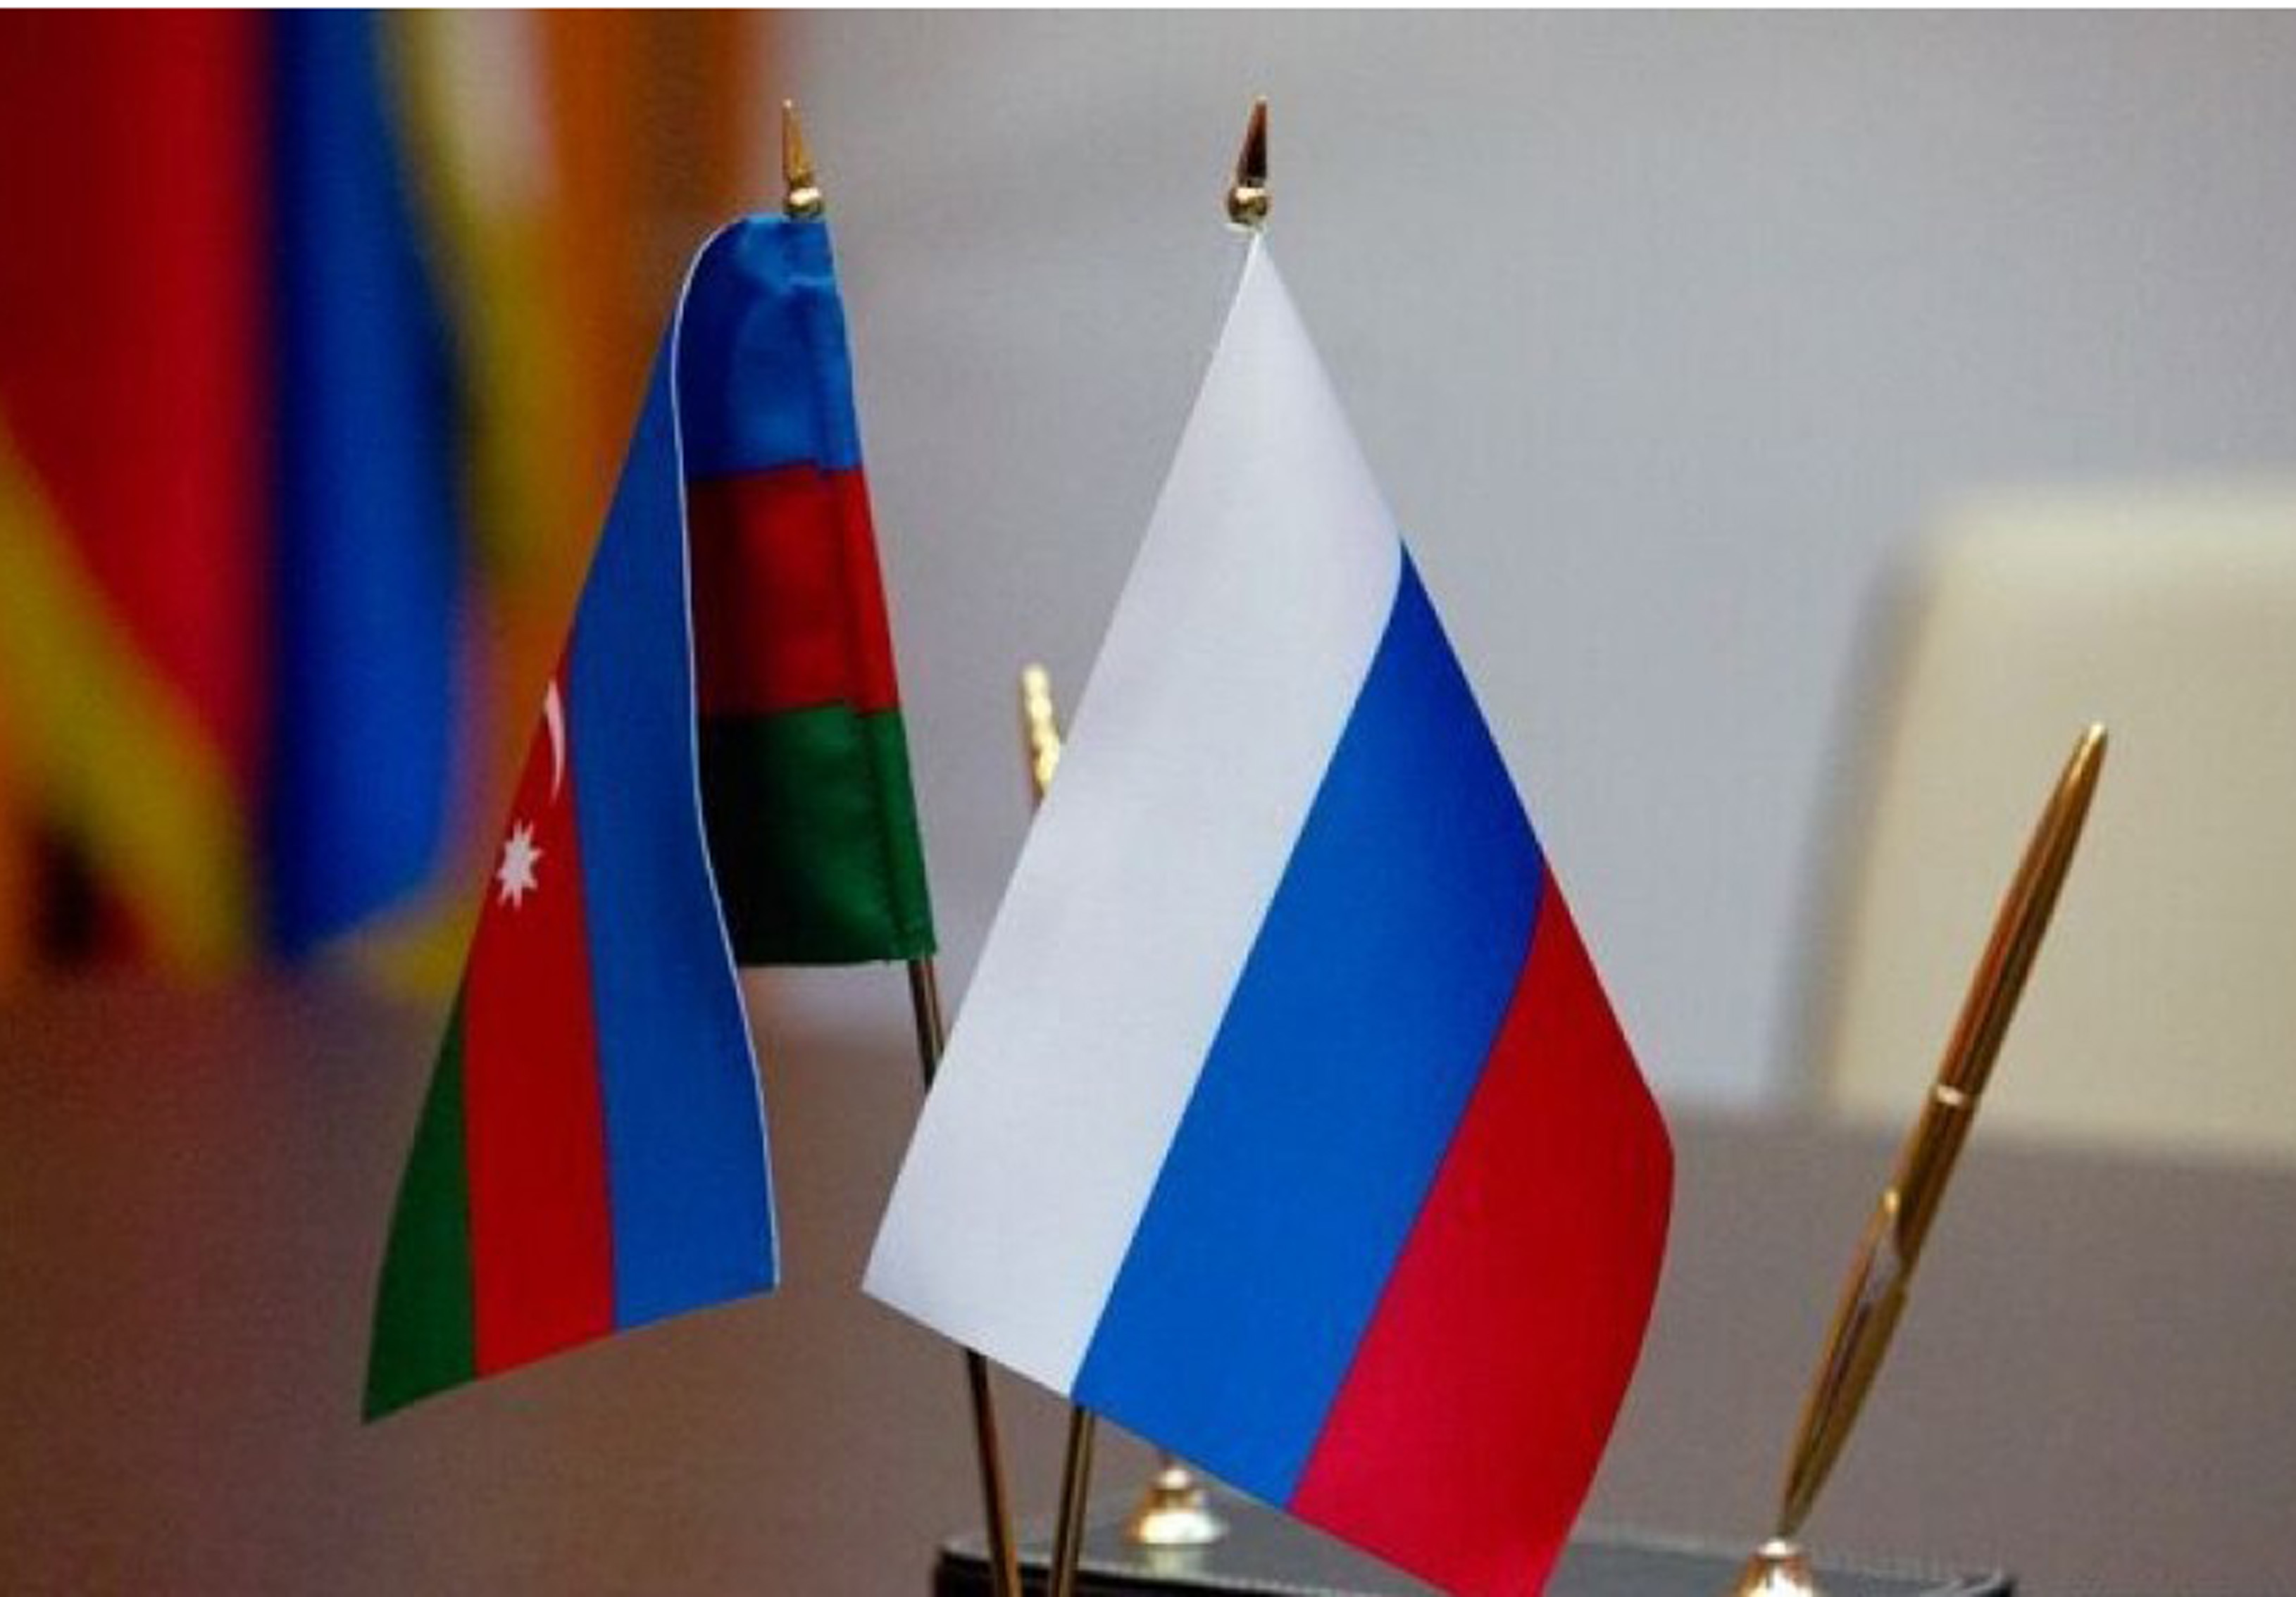 Ставрополье готовится к VIII российско-азербайджанскому межрегиональному форуму